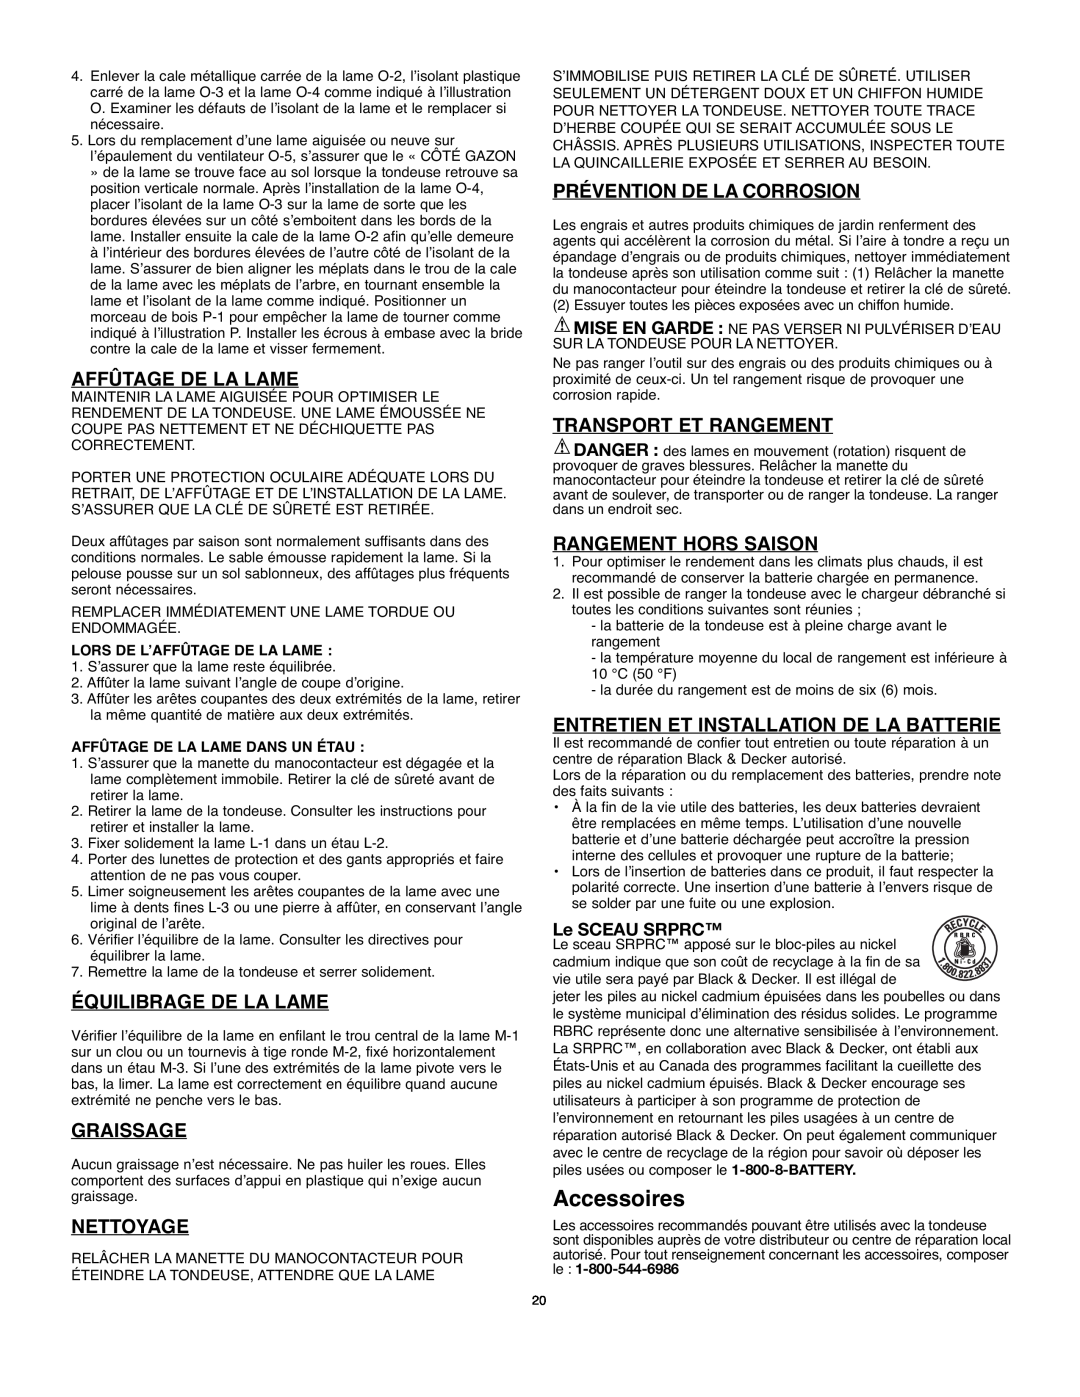 Black & Decker 90514757 instruction manual Accessoires, Affûtage De La Lame, Équilibrage De La Lame, Graissage, Nettoyage 